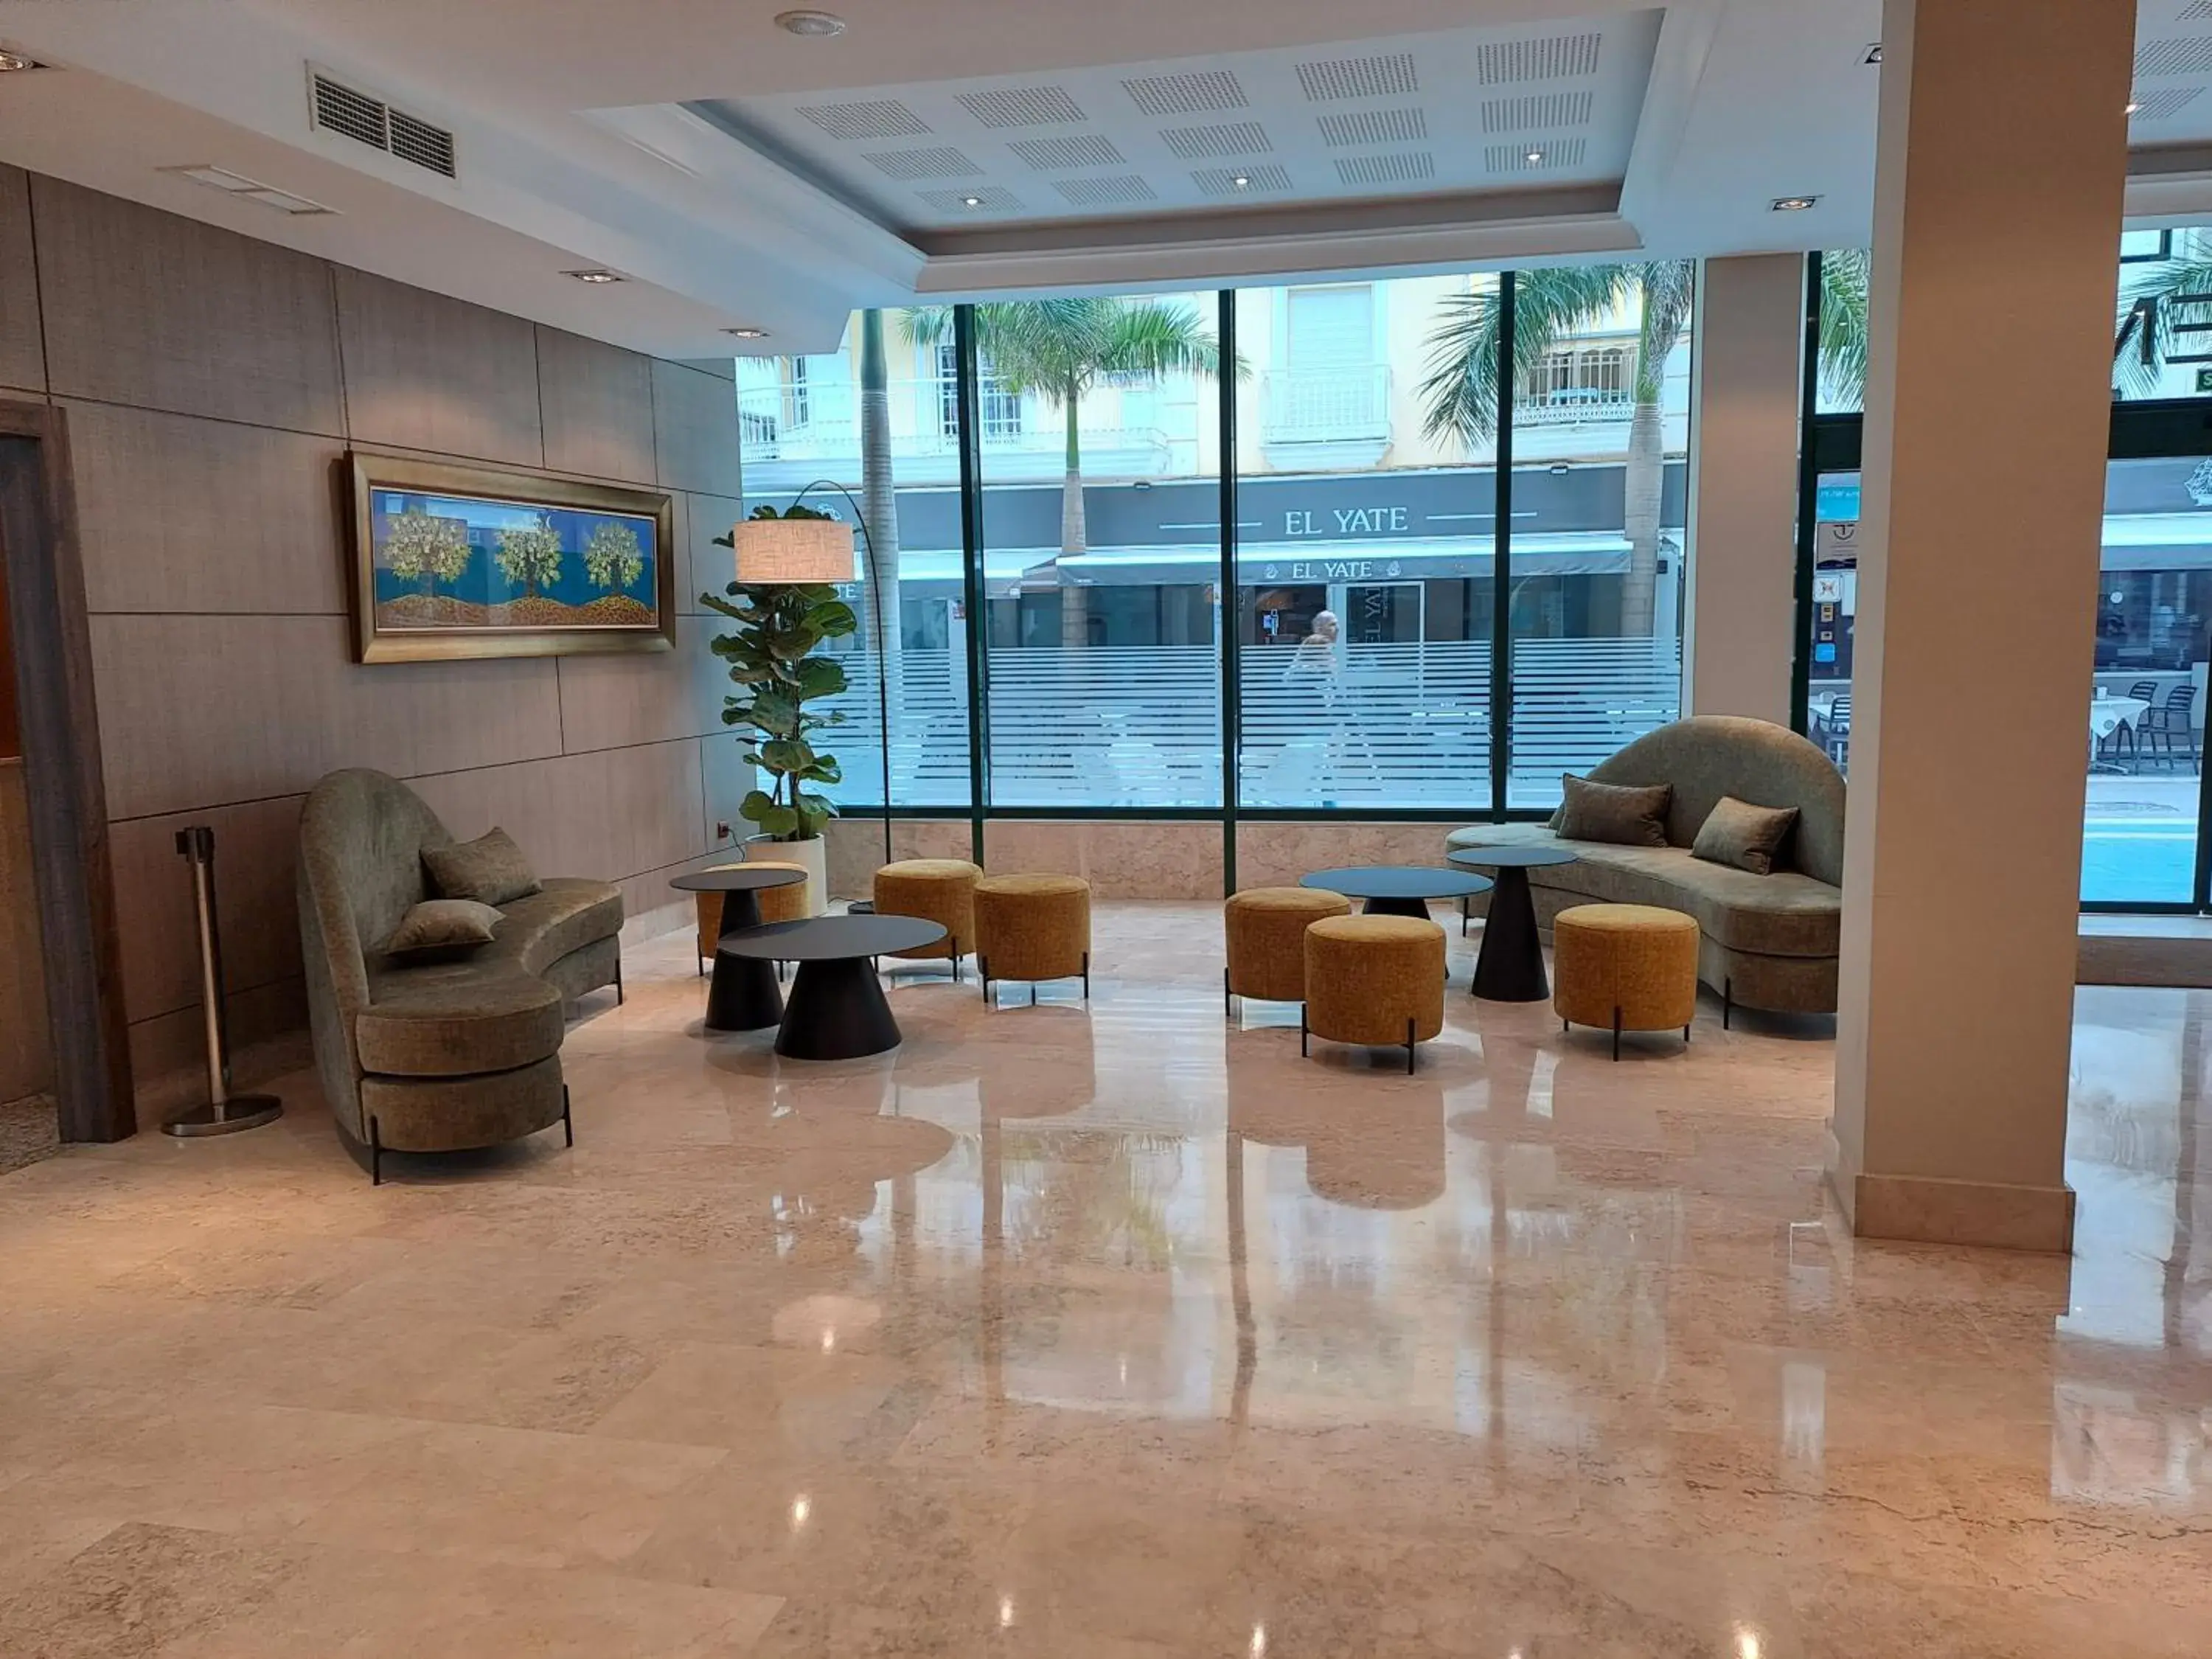 Lobby or reception in Hotel Torremar